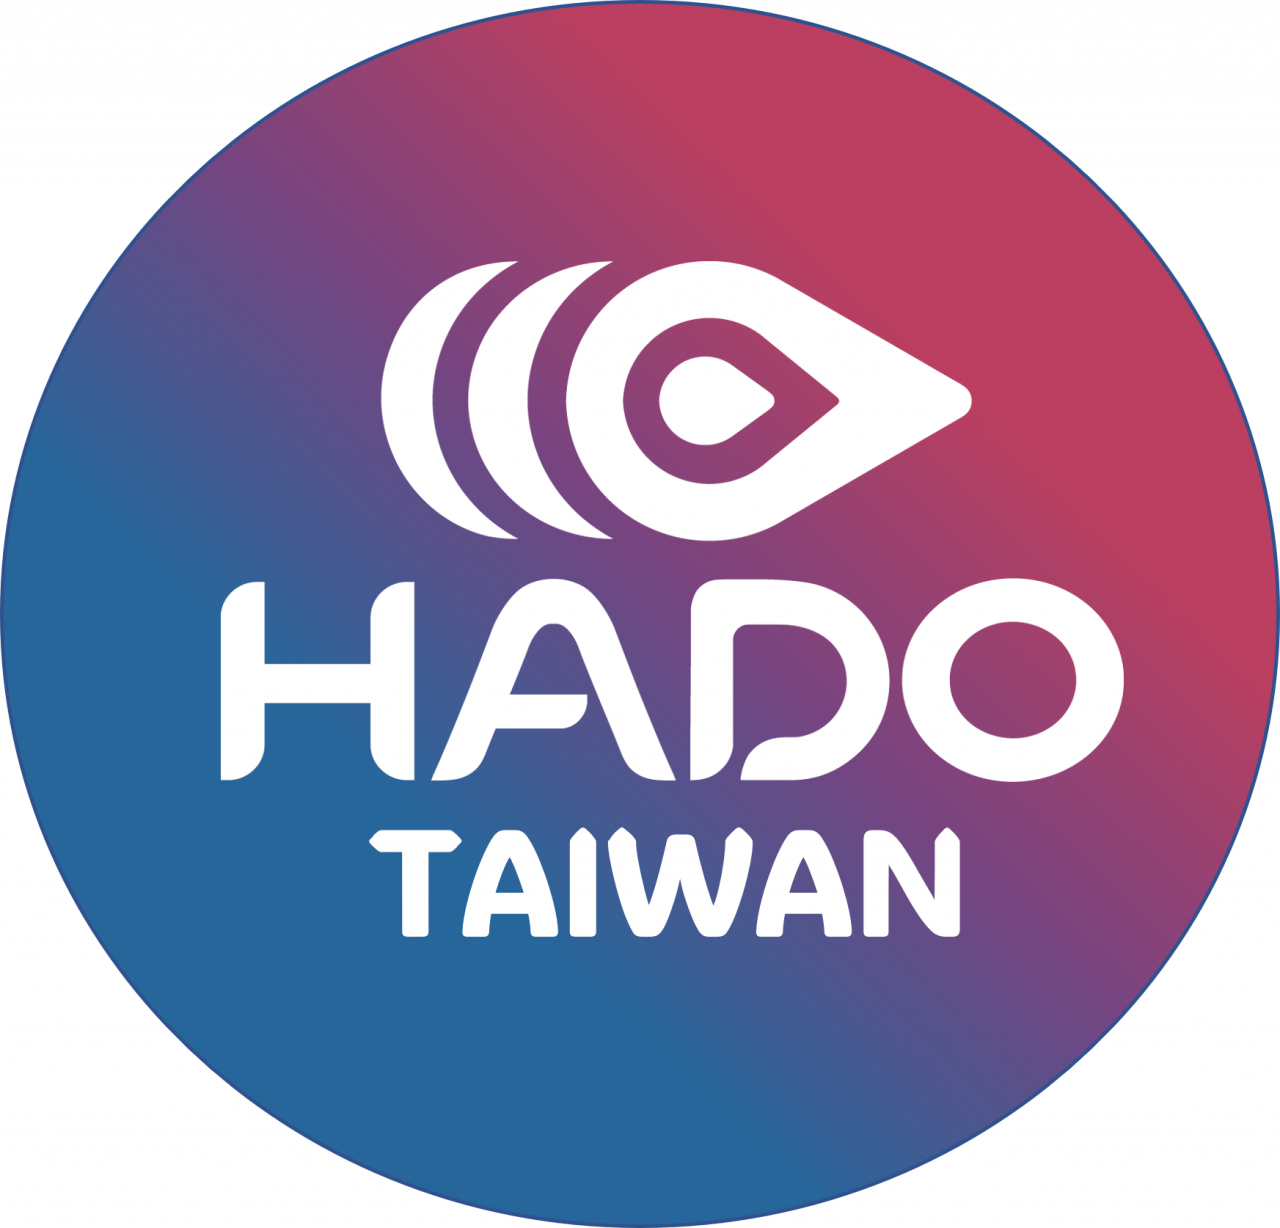 HADO TAIWAN